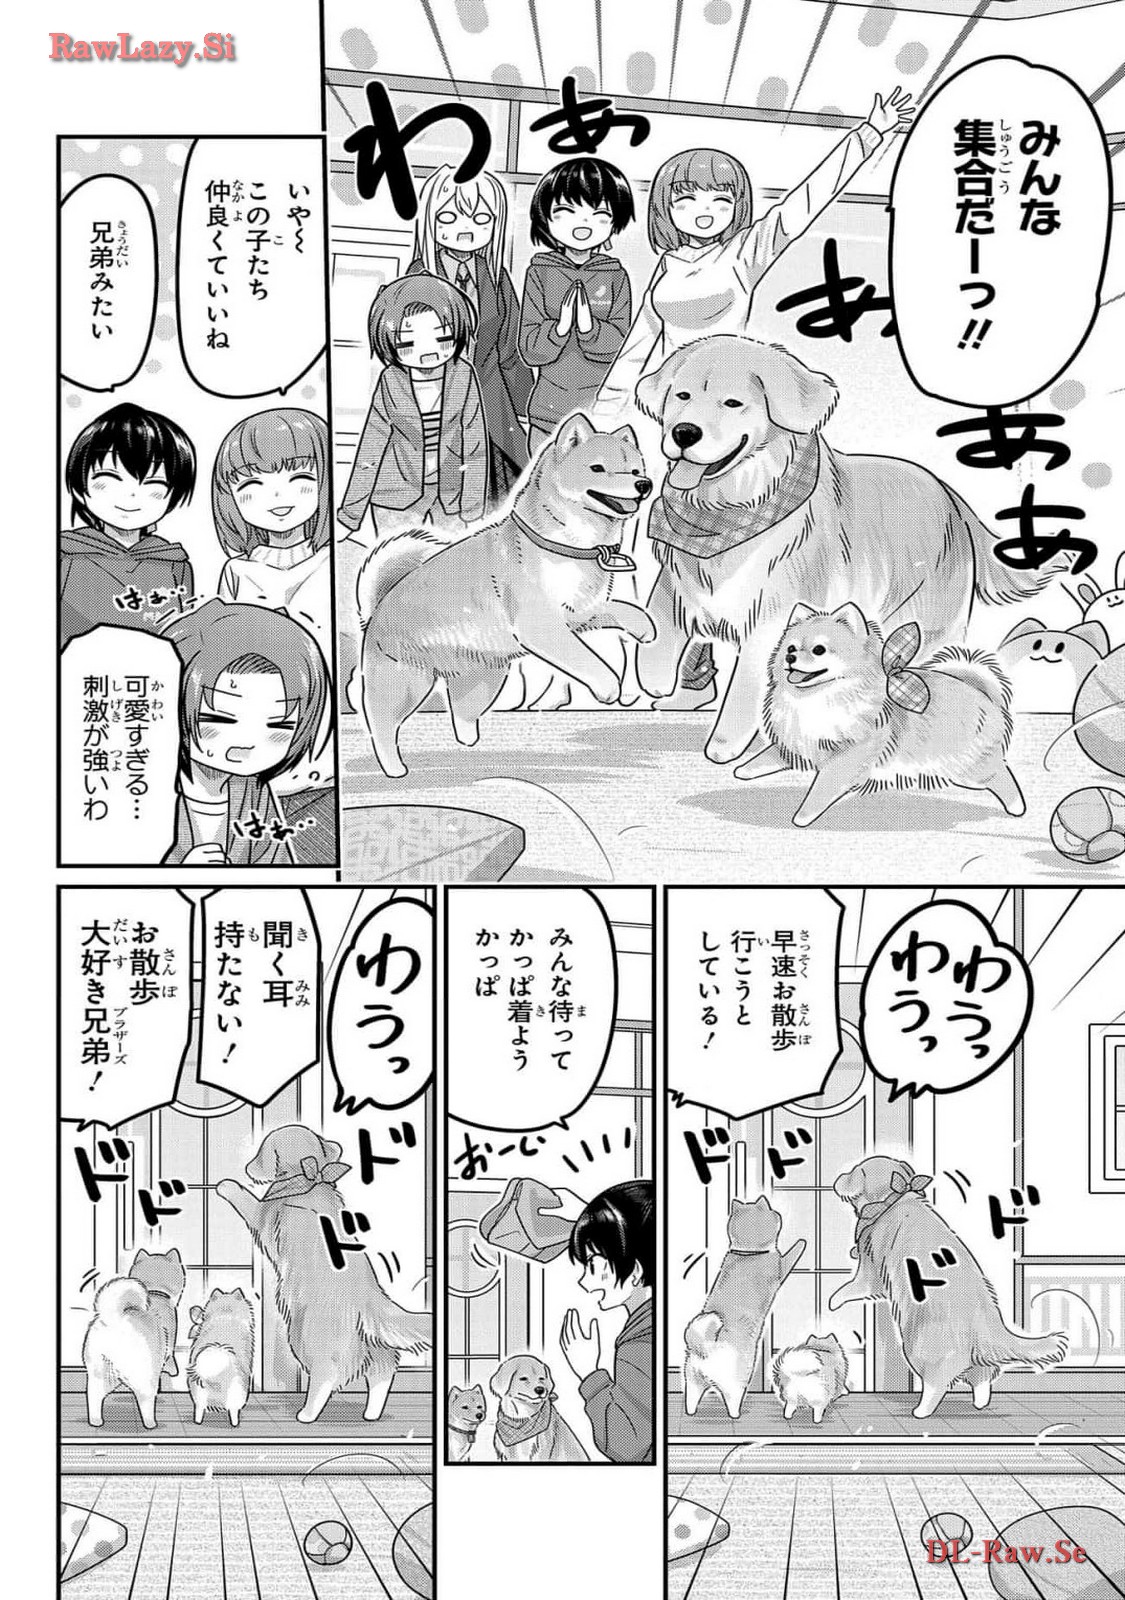 Kawaisugi Crisis - Chapter 108 - Page 6